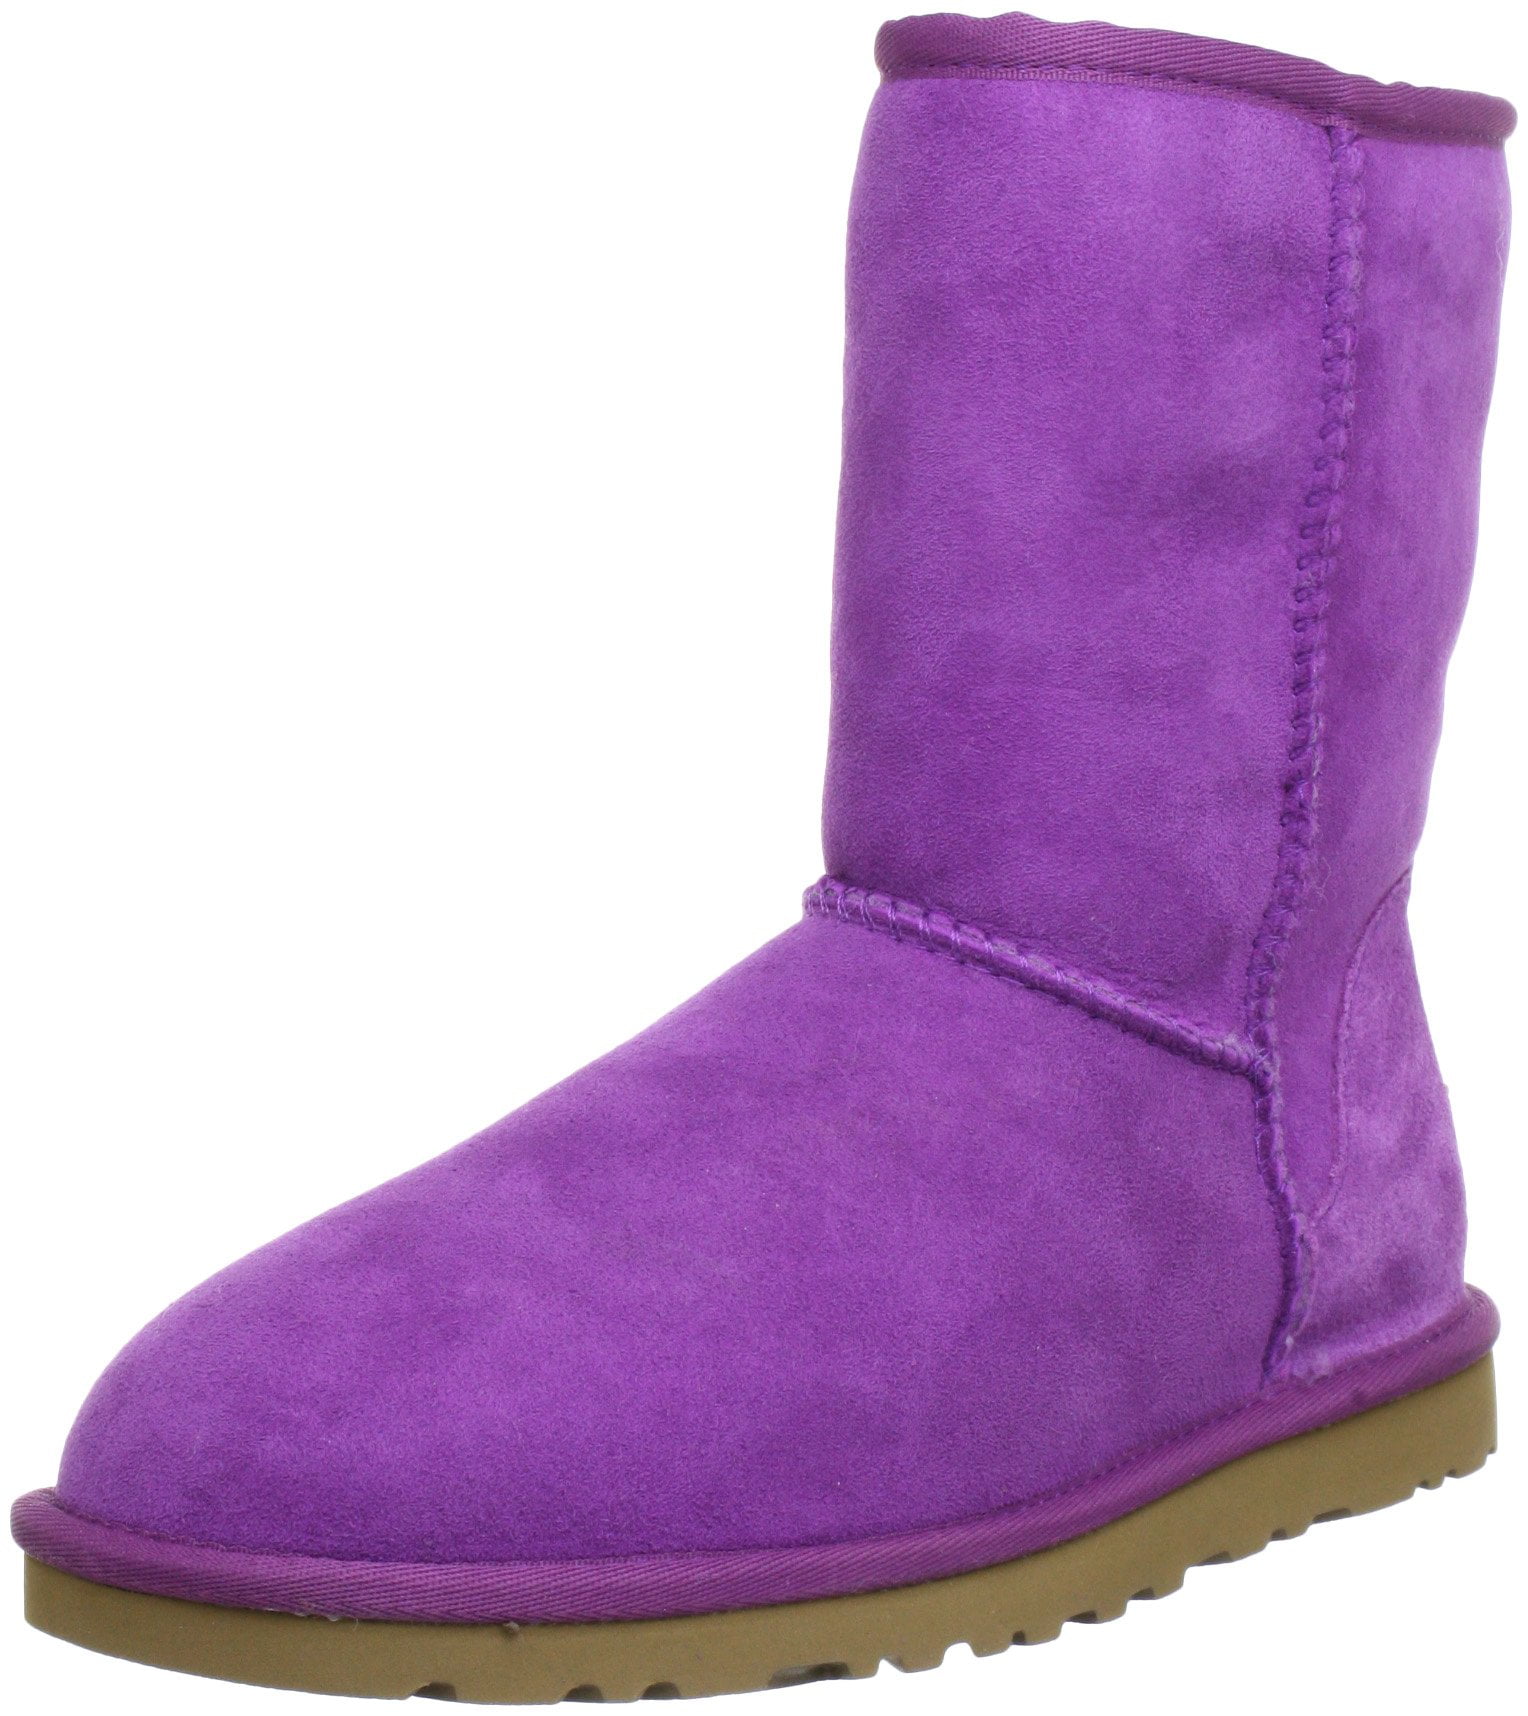 Ugg Classic Short Boots Lavender - Walmart.com